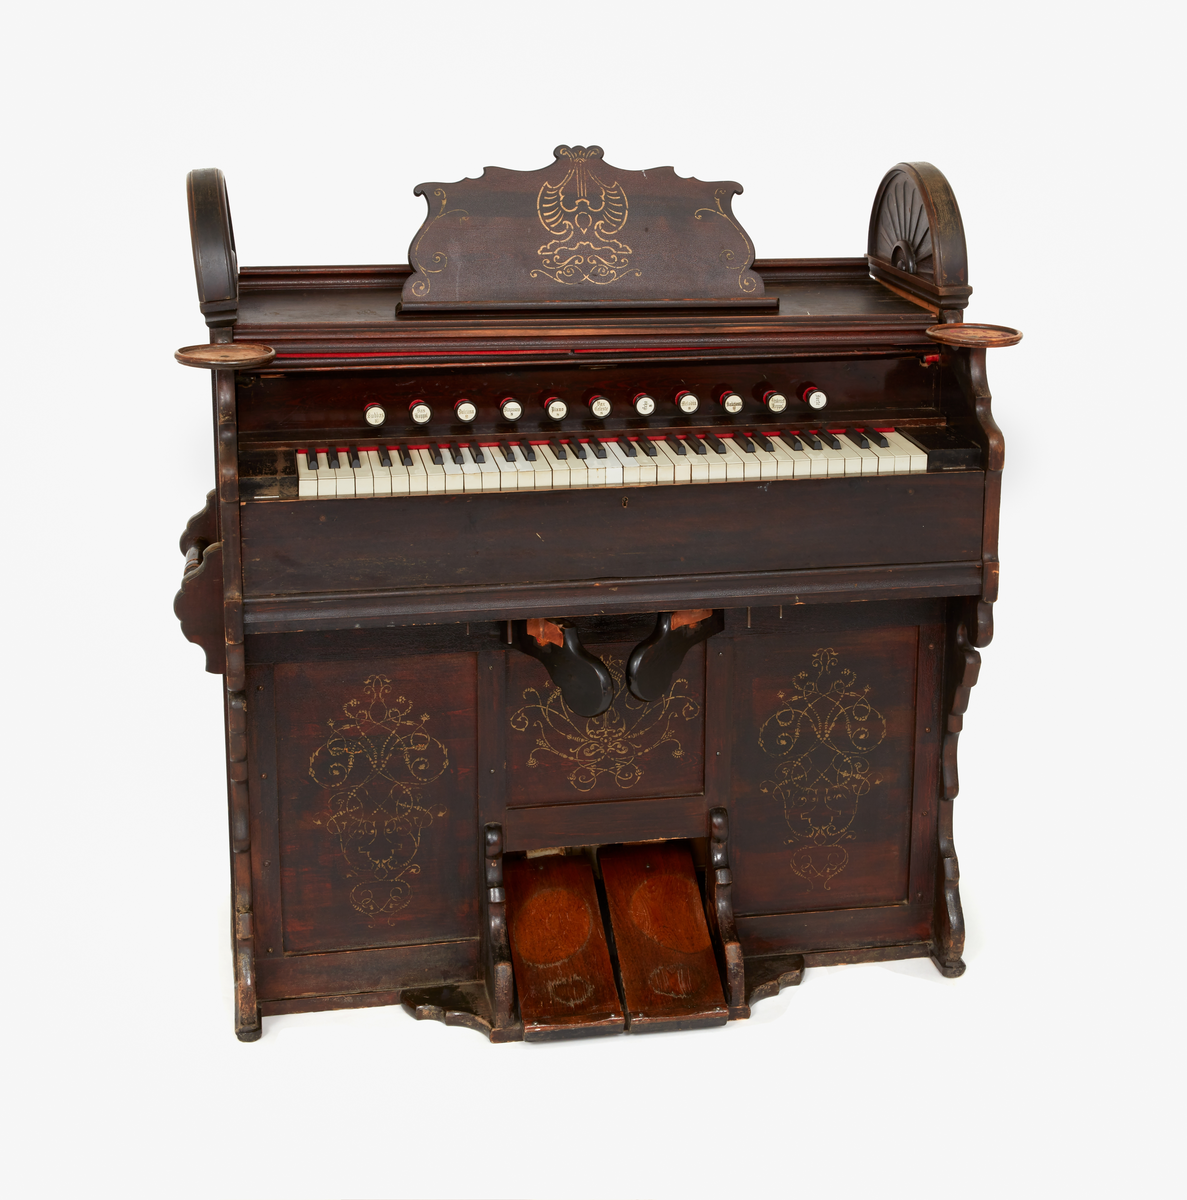 Orgelharmonium i brunbetsat trä. 
11 registerandrag. 5 oktaver.
Påmålad ornamentik i guldfärg. 
Hållare för ljusstakar på varje sida.
2 lösa halvmåneformade gavelornament.
Sannolikt tillverkat i början av 1900-talet.